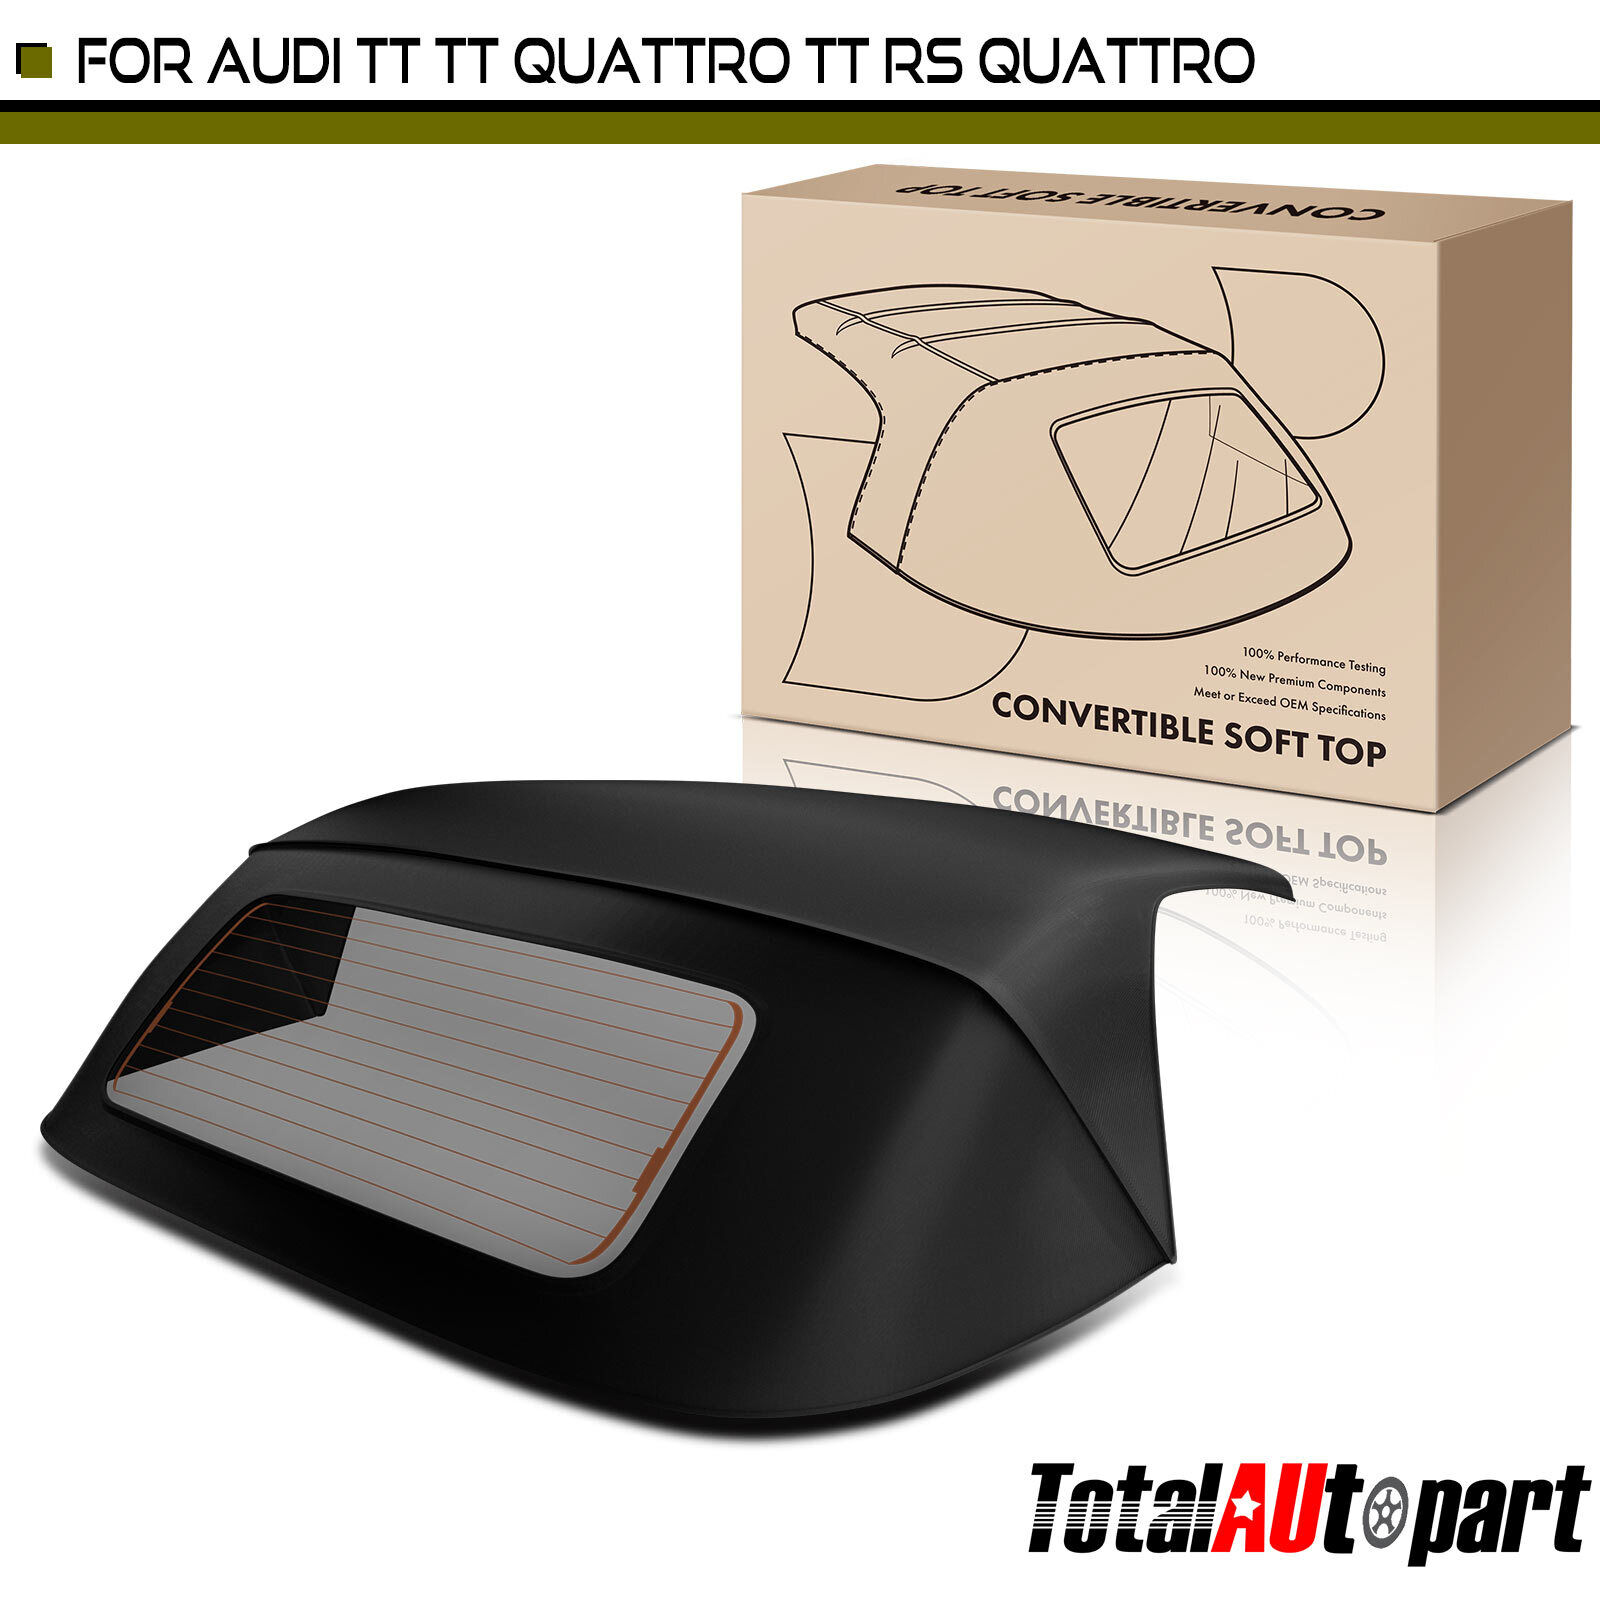 Black Convertible Soft Top for Audi TT Quattro 2008-2013 TT RS Quattro 2011-2013